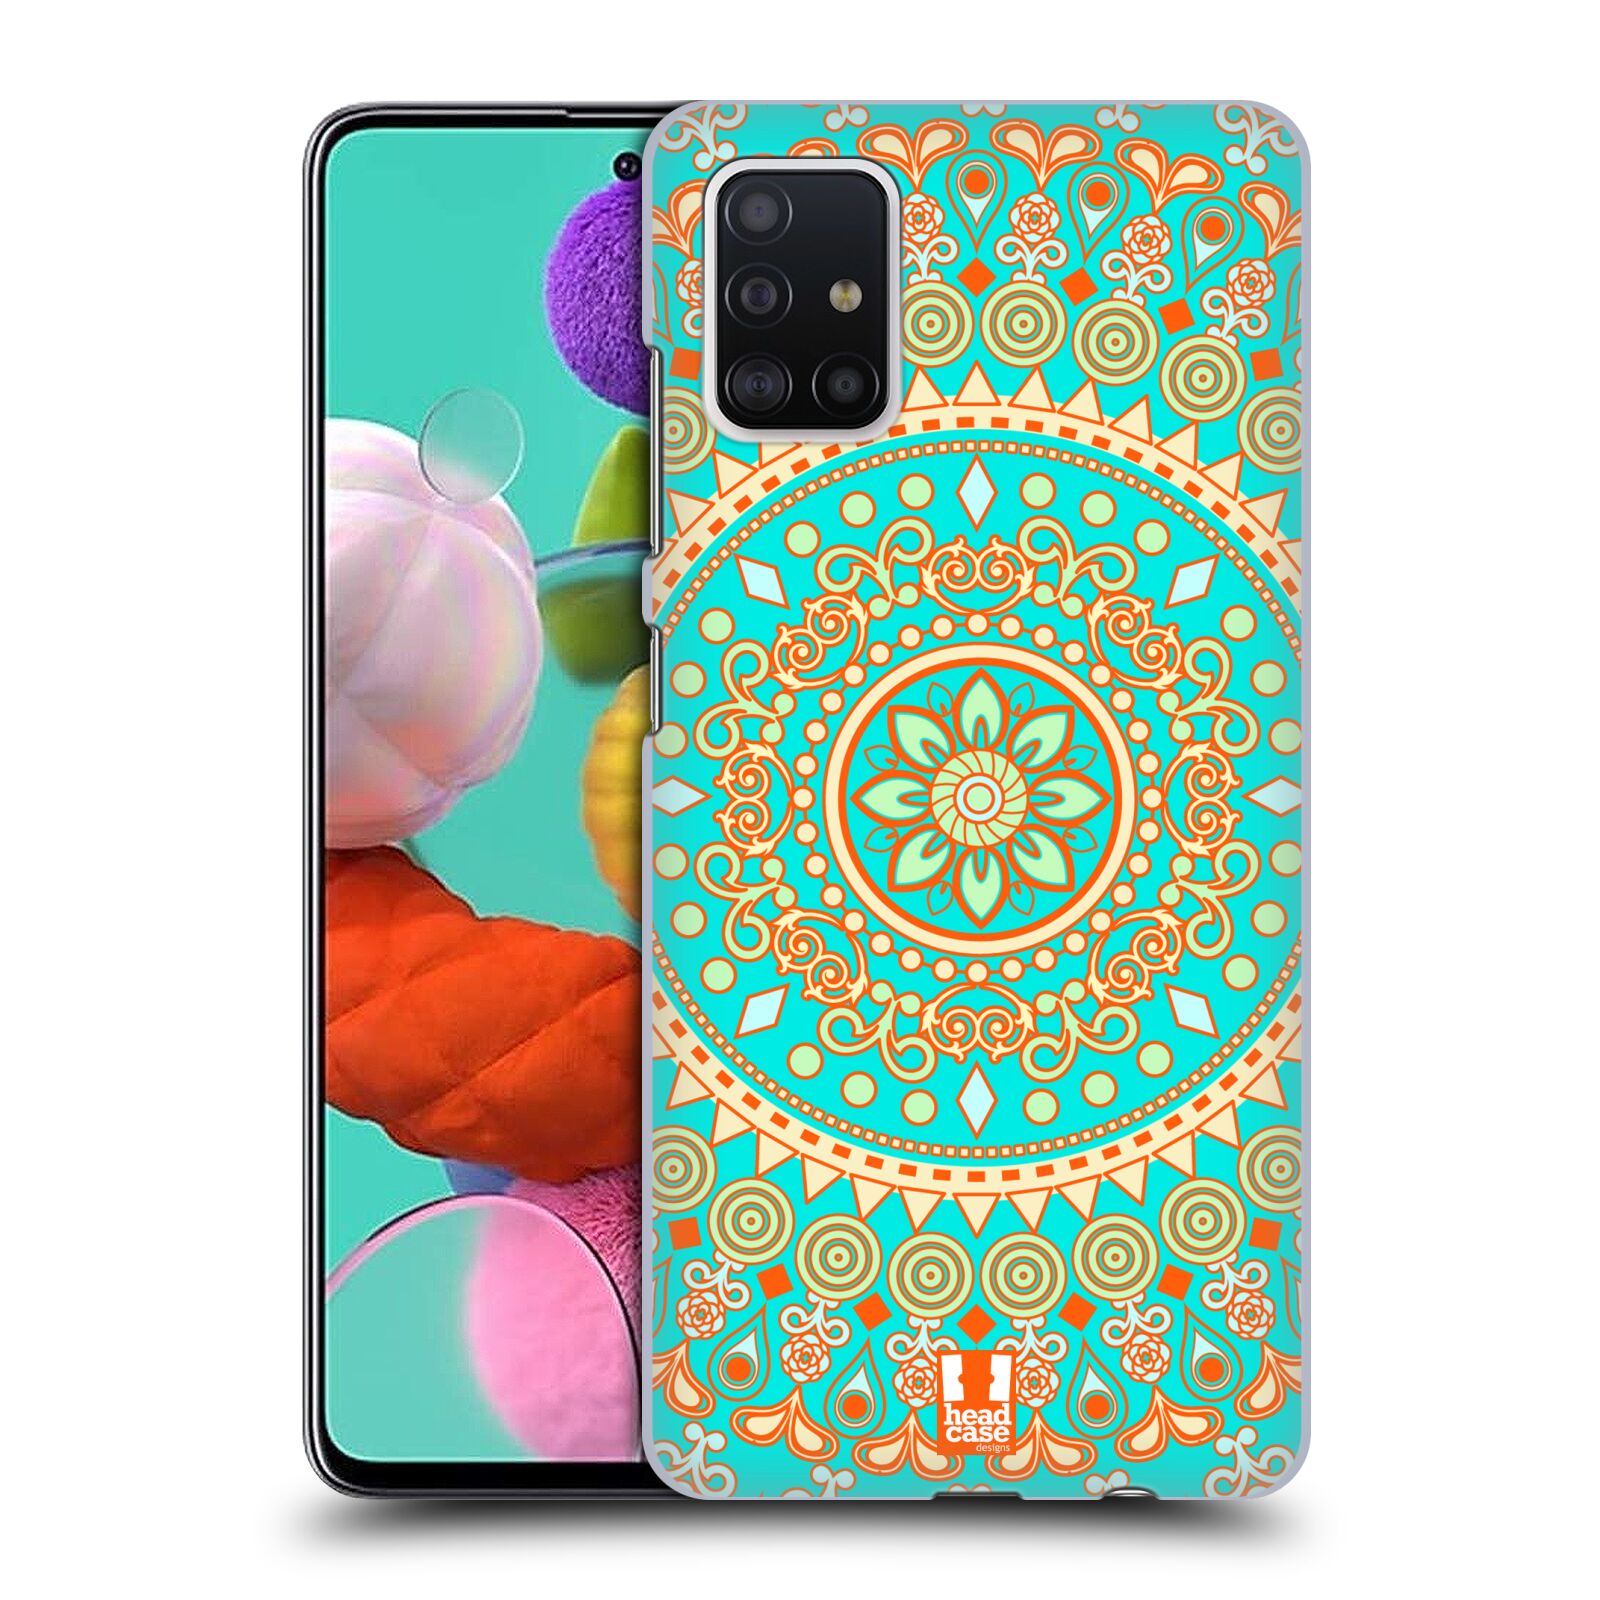 Pouzdro na mobil Samsung Galaxy A51 - HEAD CASE - vzor Indie Mandala slunce barevný motiv TYRKYSOVÁ, ZELENÁ